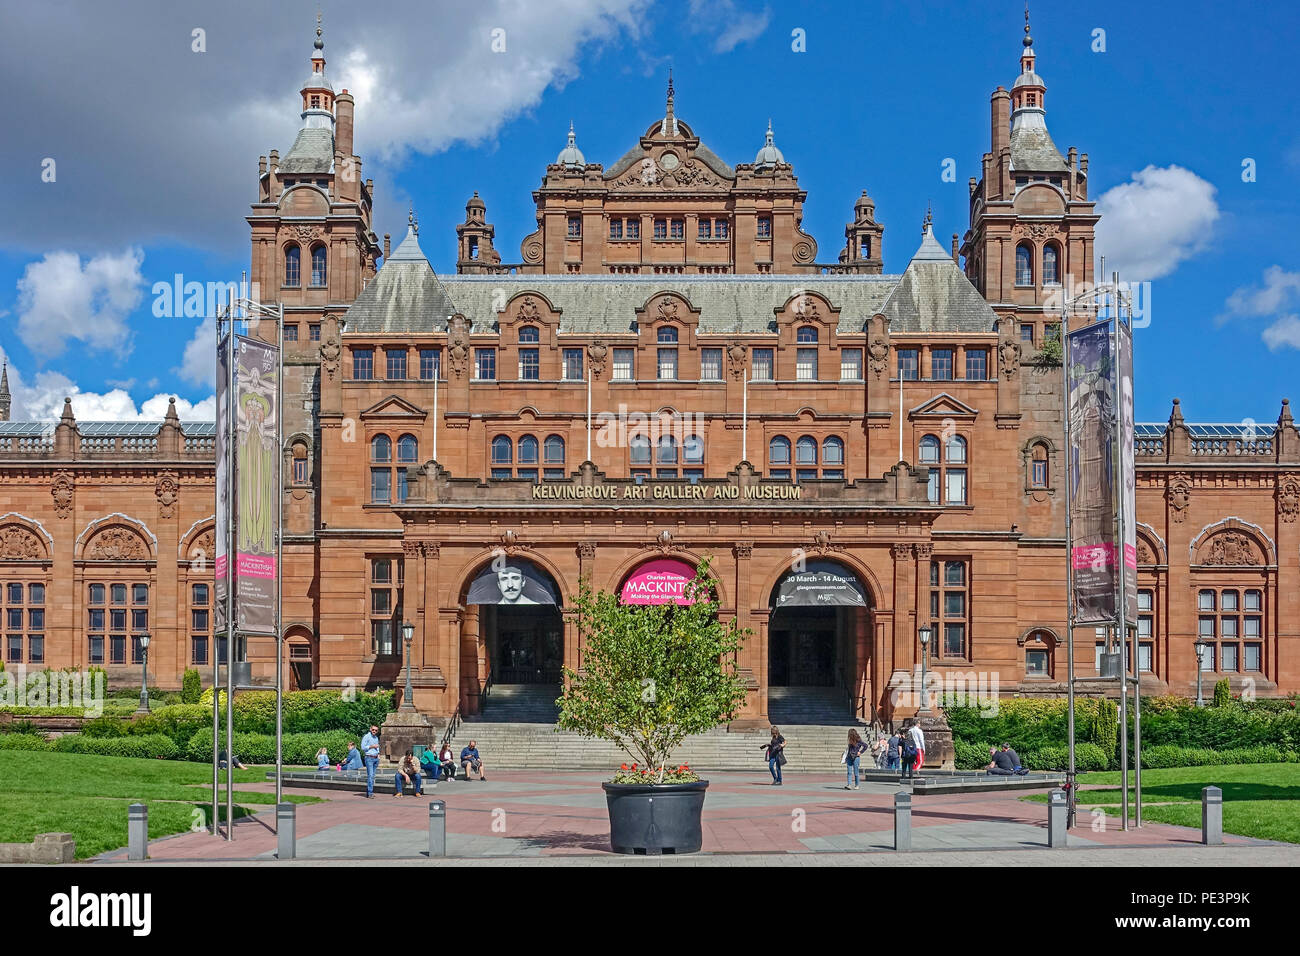 Fassade des Kelvingrove Art Gallery und Museum in Argyle Street Glasgow mit Werbung und Förderung von Charles Rennie Mackintosh Ausstellung 2018 Stockfoto